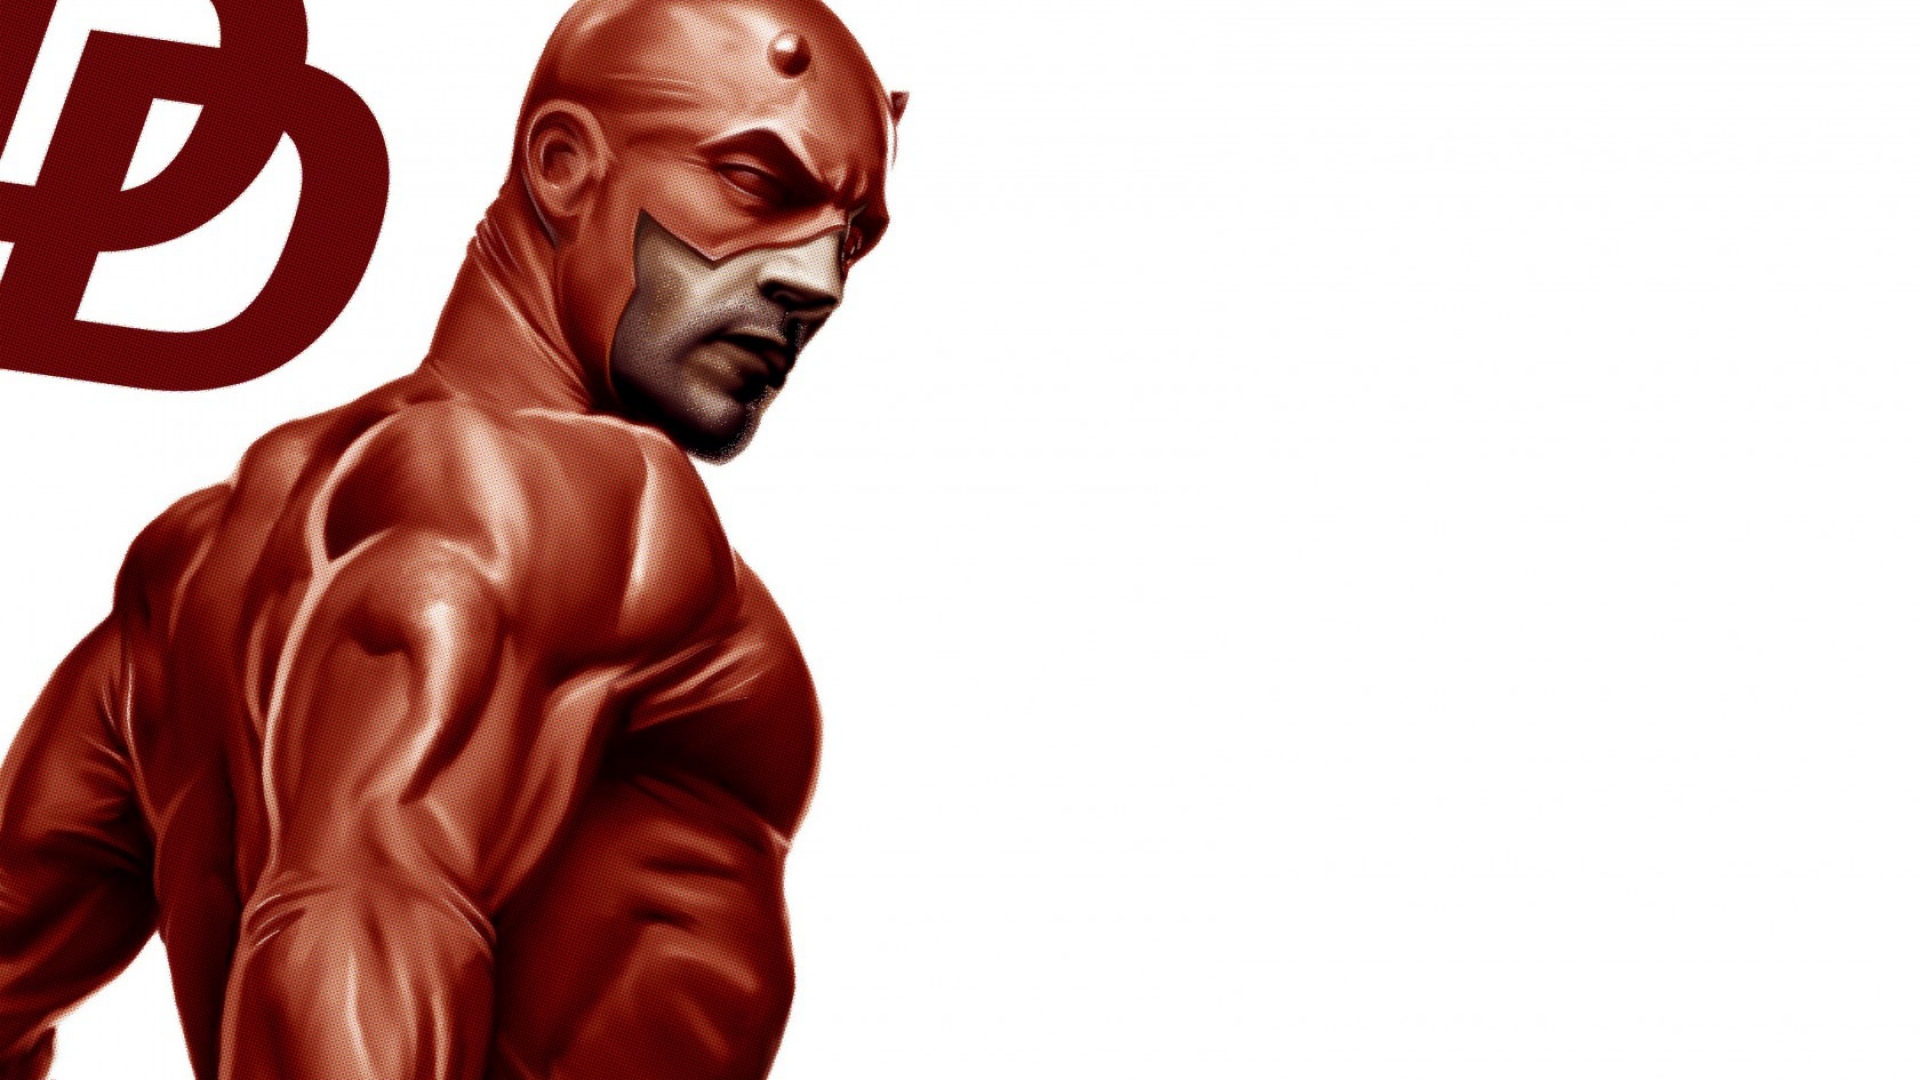 Descarga gratuita de fondo de pantalla para móvil de Historietas, Daredevil.